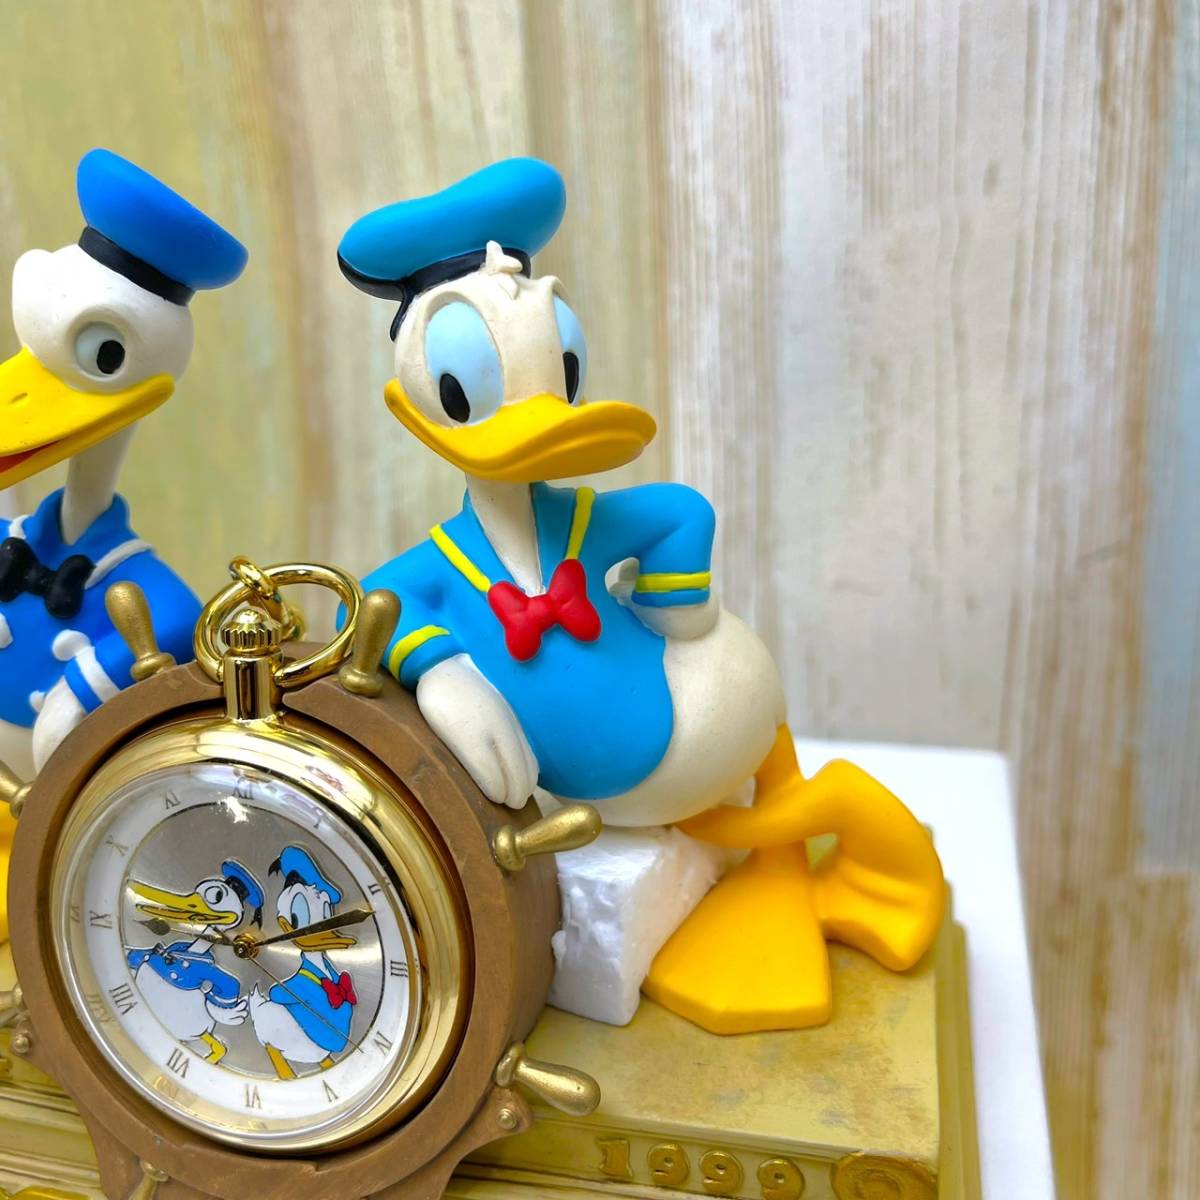 限定1934体 レア★ドナルド ダック Donald Duck クラシック 生誕 65周年記念 懐中時計 陶器製 舵 船長 フィギュア★ディズニー Disney TDLの画像5